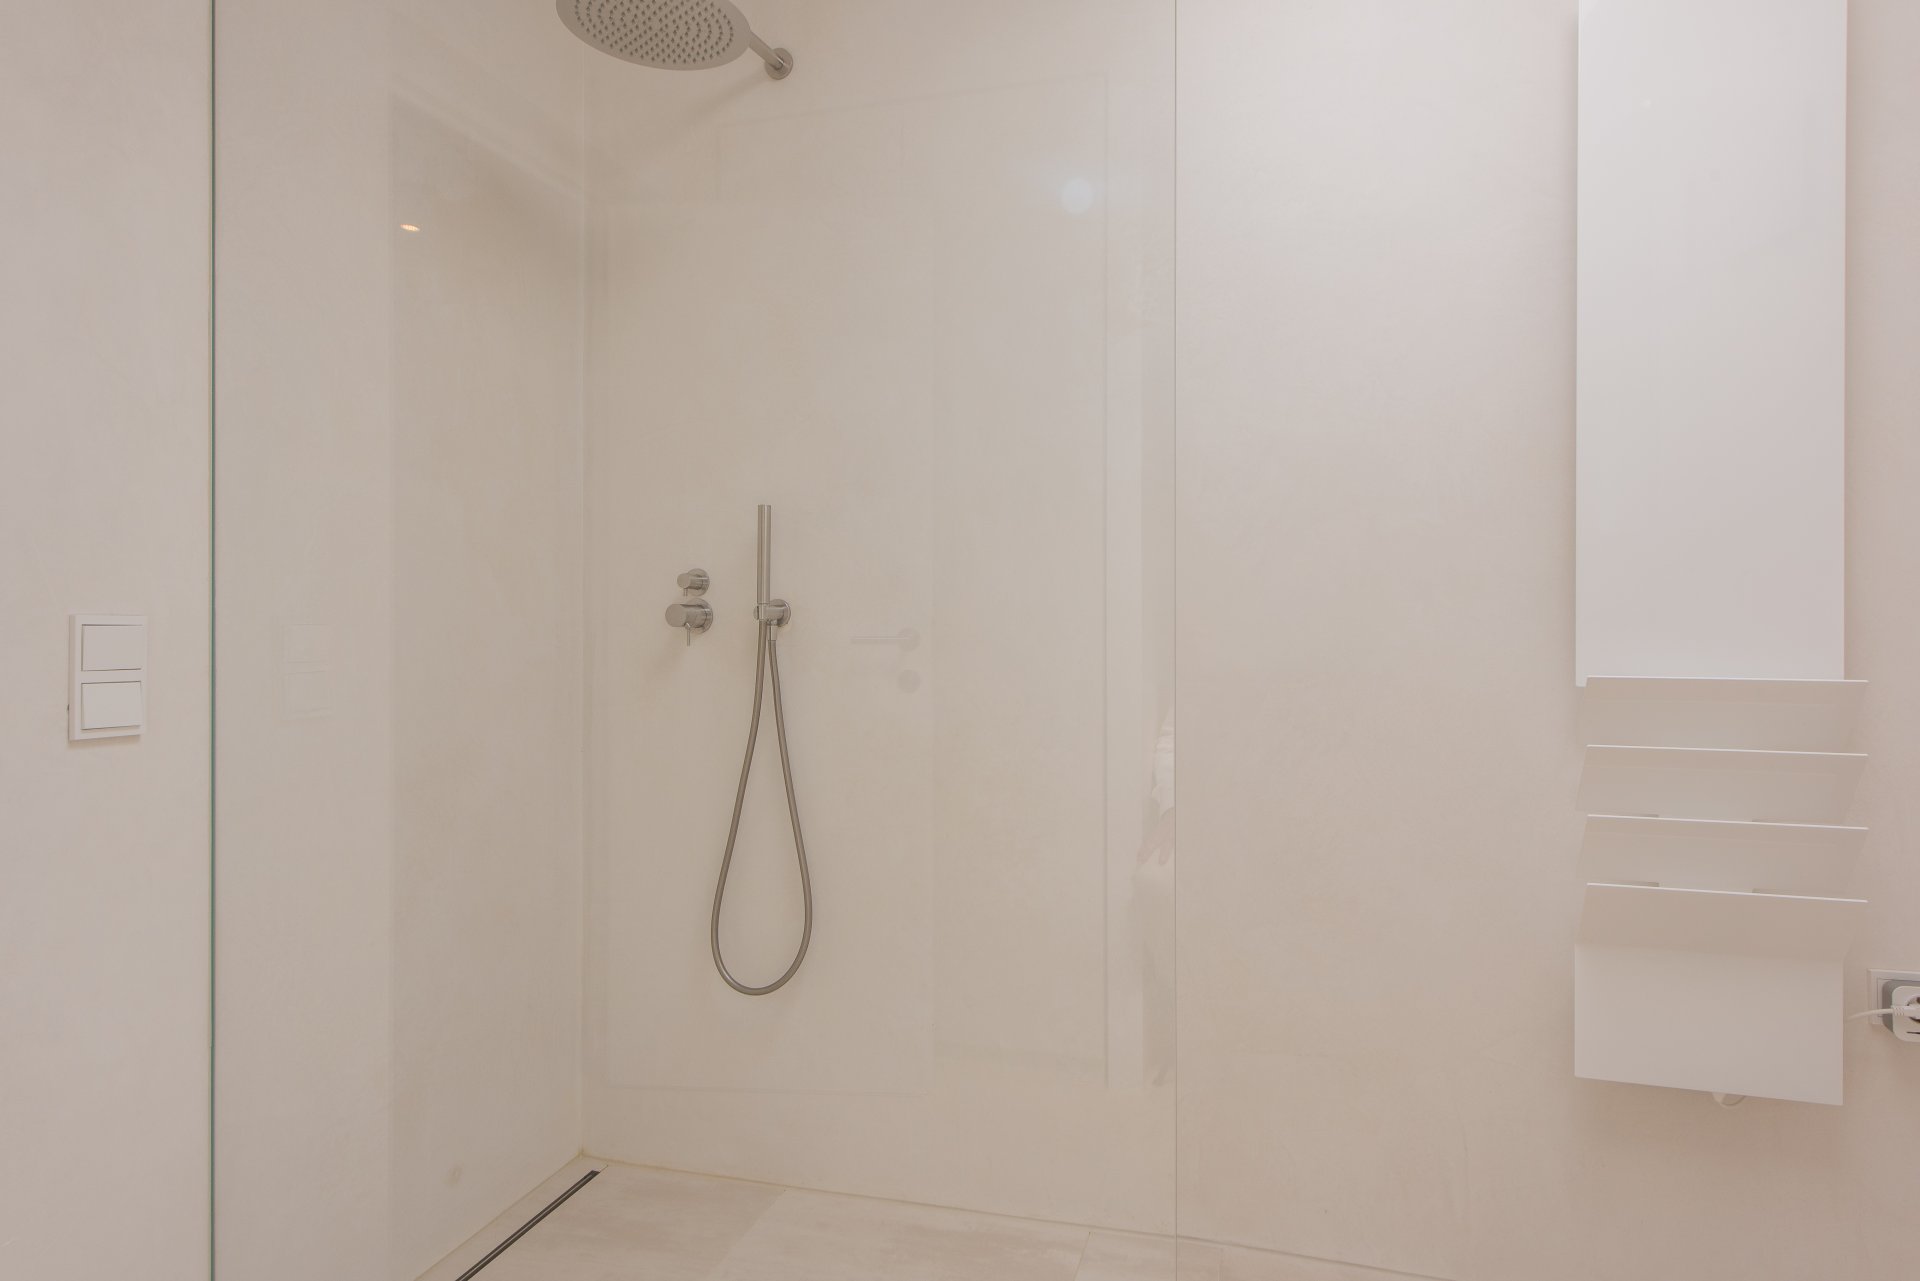 Bodengleiches Duschen bedeutet Komfort für Jung und Alt - Oliver Reifferscheid - Immobilienmakler Darmstadt